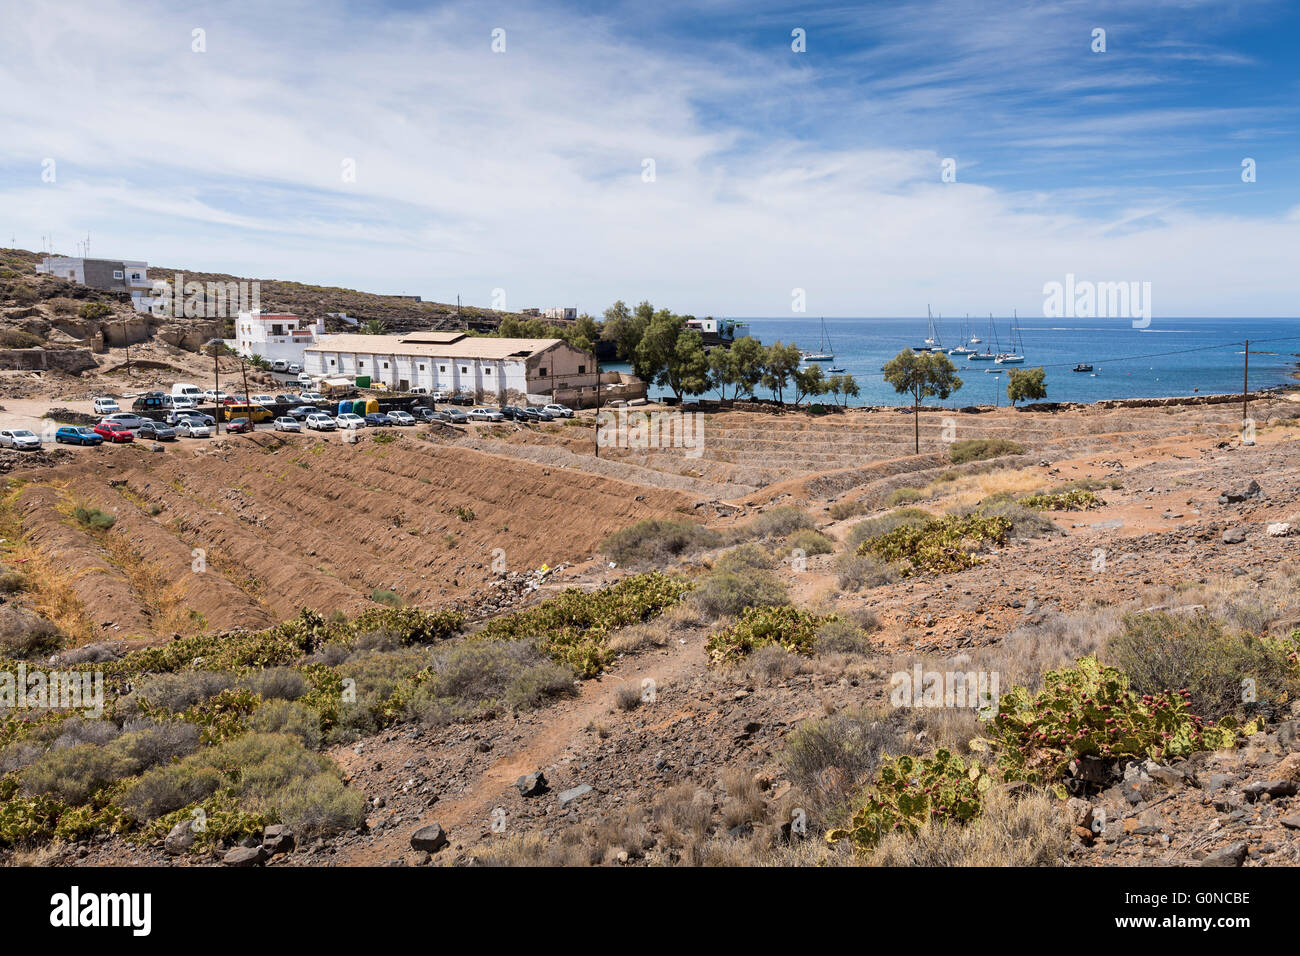 La apartada aldea portuaria de El Puertito de Adeje, Tenerife, Islas Canarias, España. Foto de stock